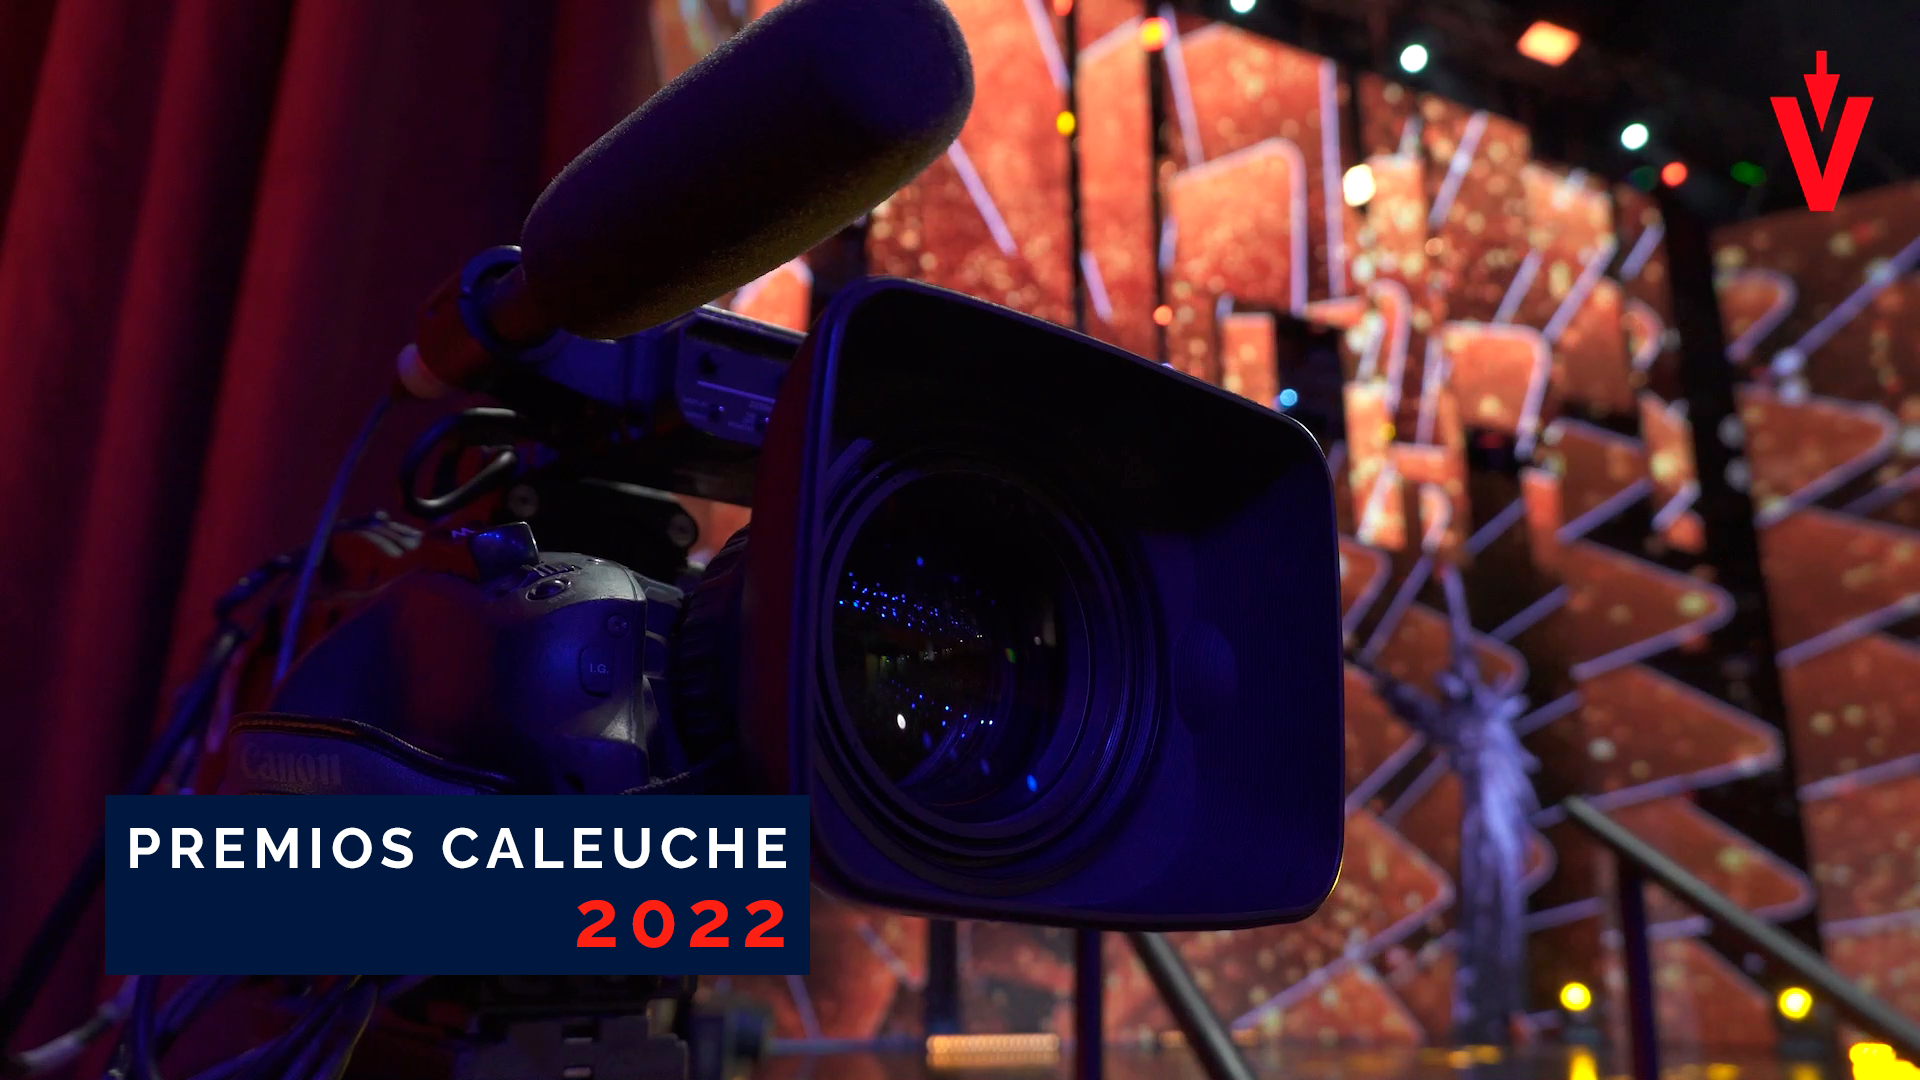 Premios Caleuche 2022: En EVoting consolidamos la democracia electrónica en todos los ámbitos, también en el arte y la cultura.